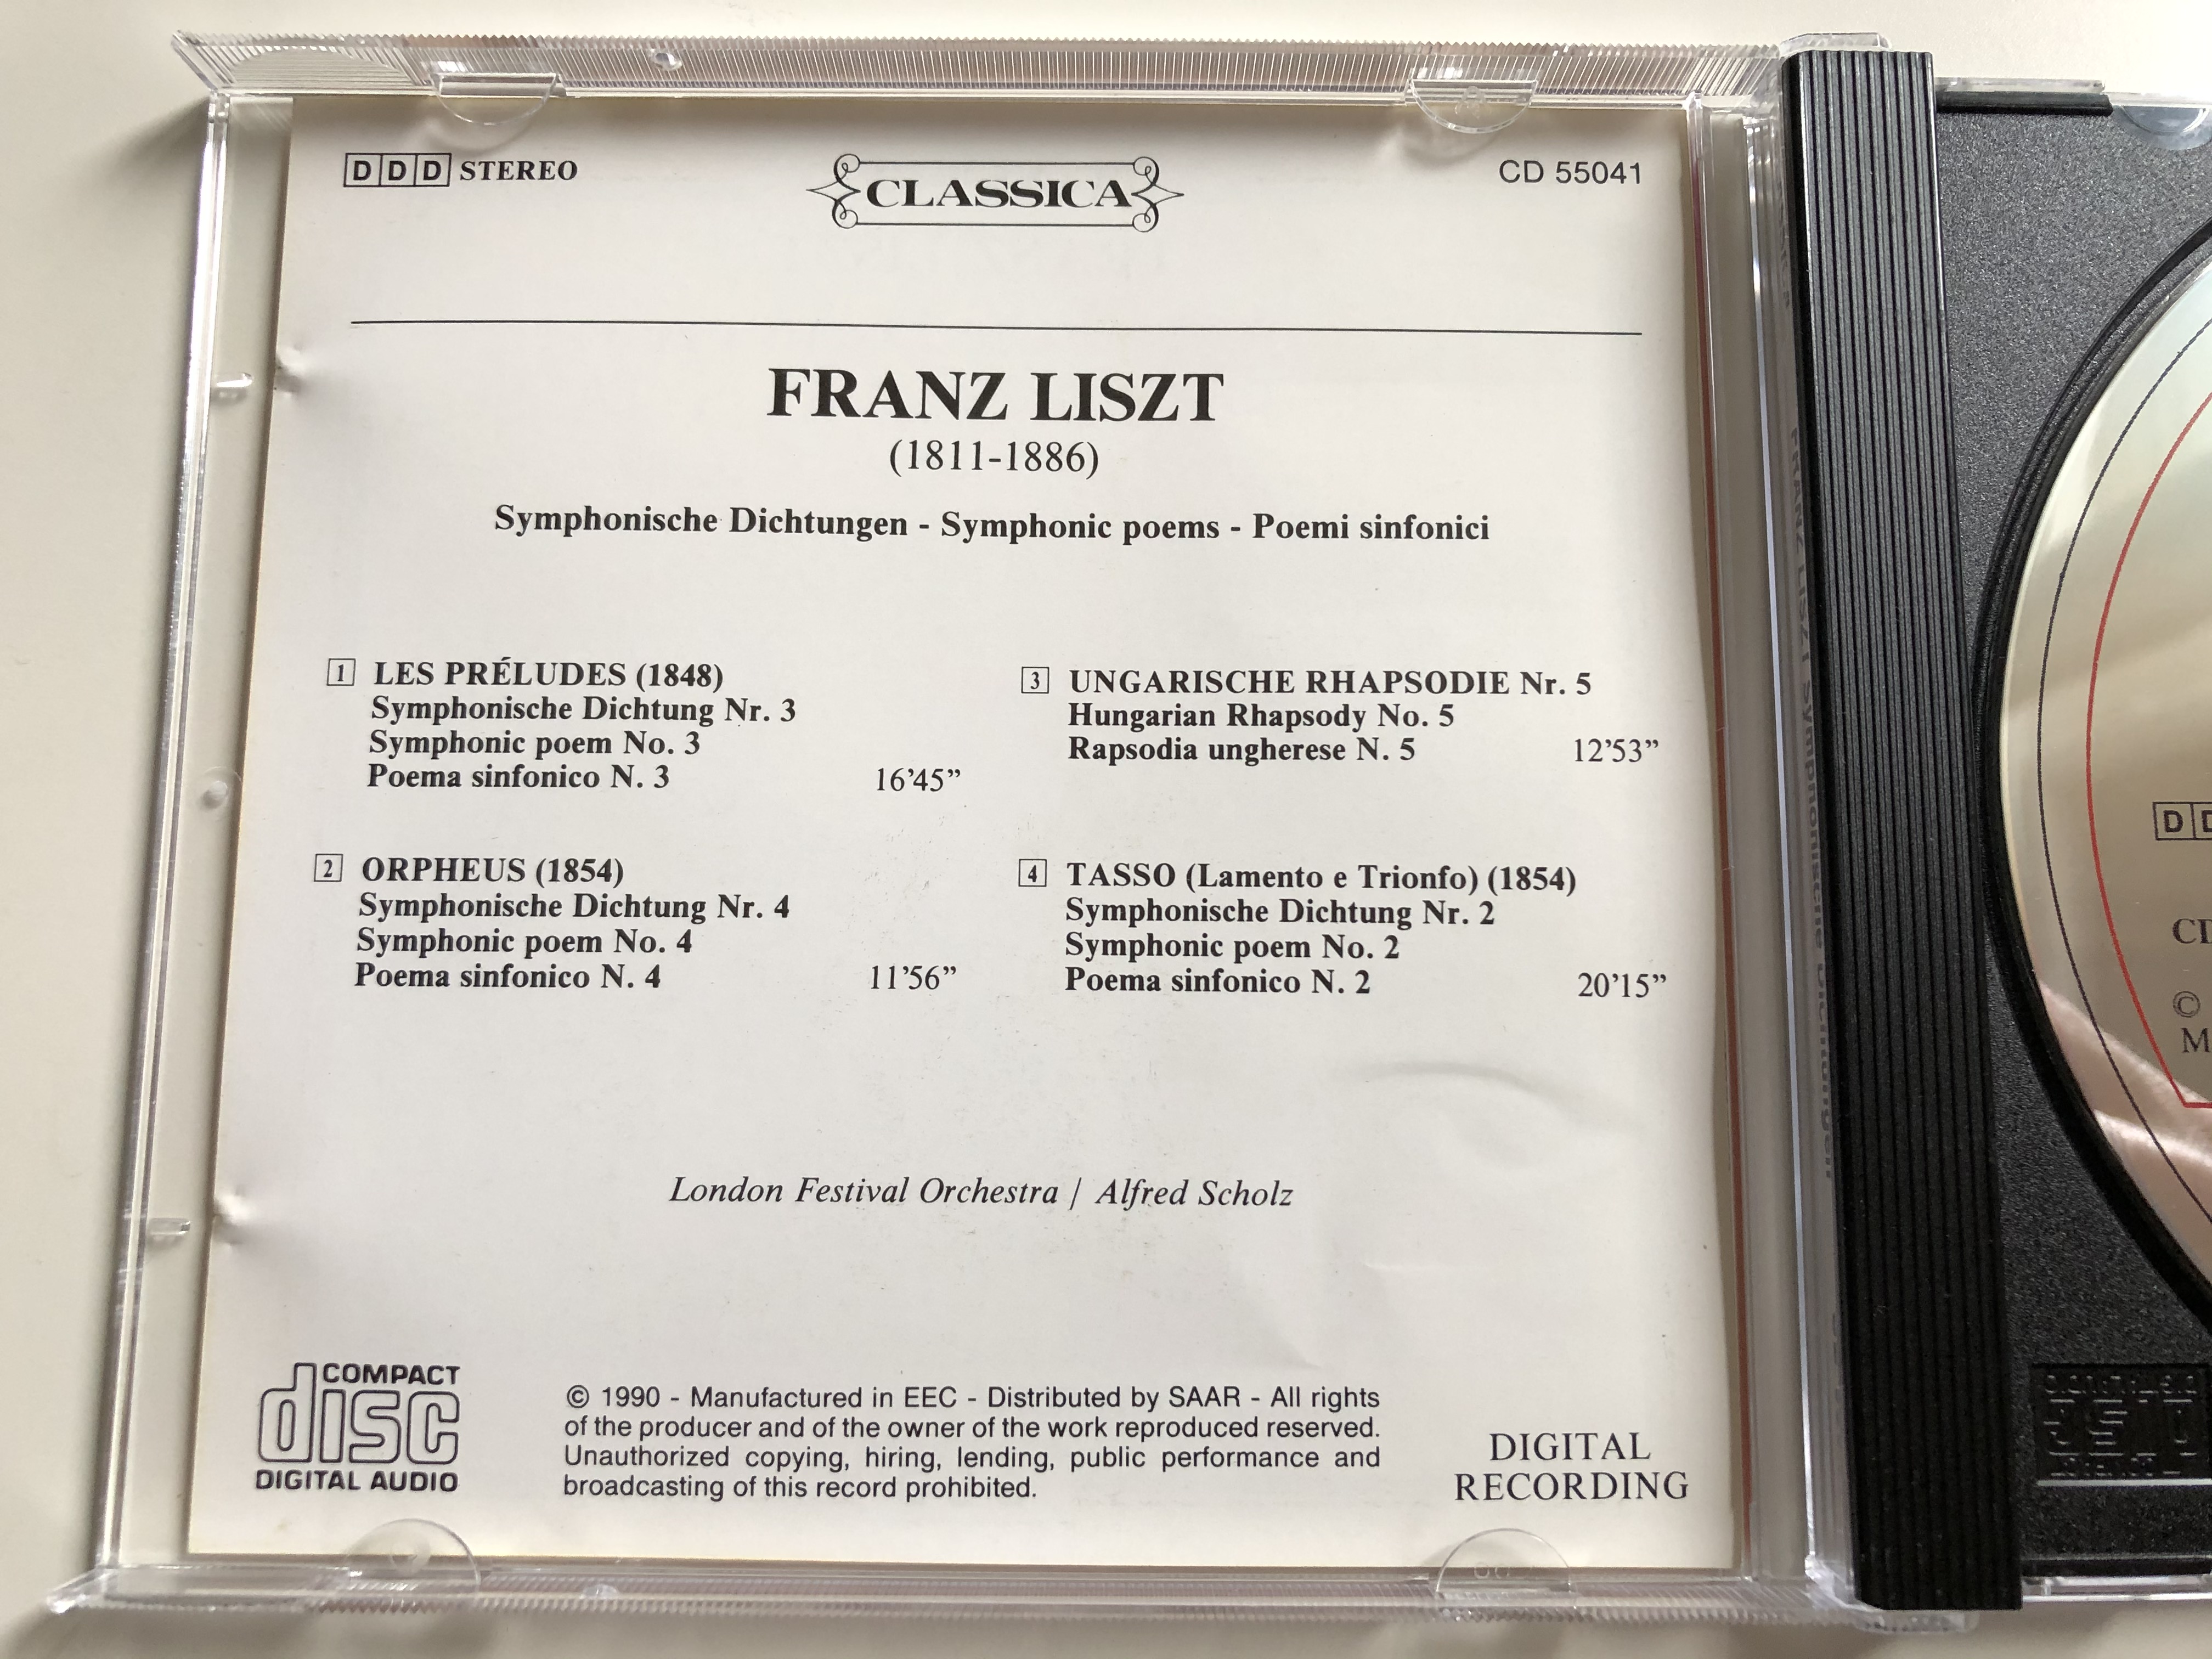 Franz Liszt - Symphonische Dichtungen / Les Preludes, Orpheus, Tasso /  Ungarische Rhapsodie Nr. 5 / London Festival Orchestra, Alfred Scholz / EEC  Audio CD 1990 Stereo / CD 55041 - bibleinmylanguage